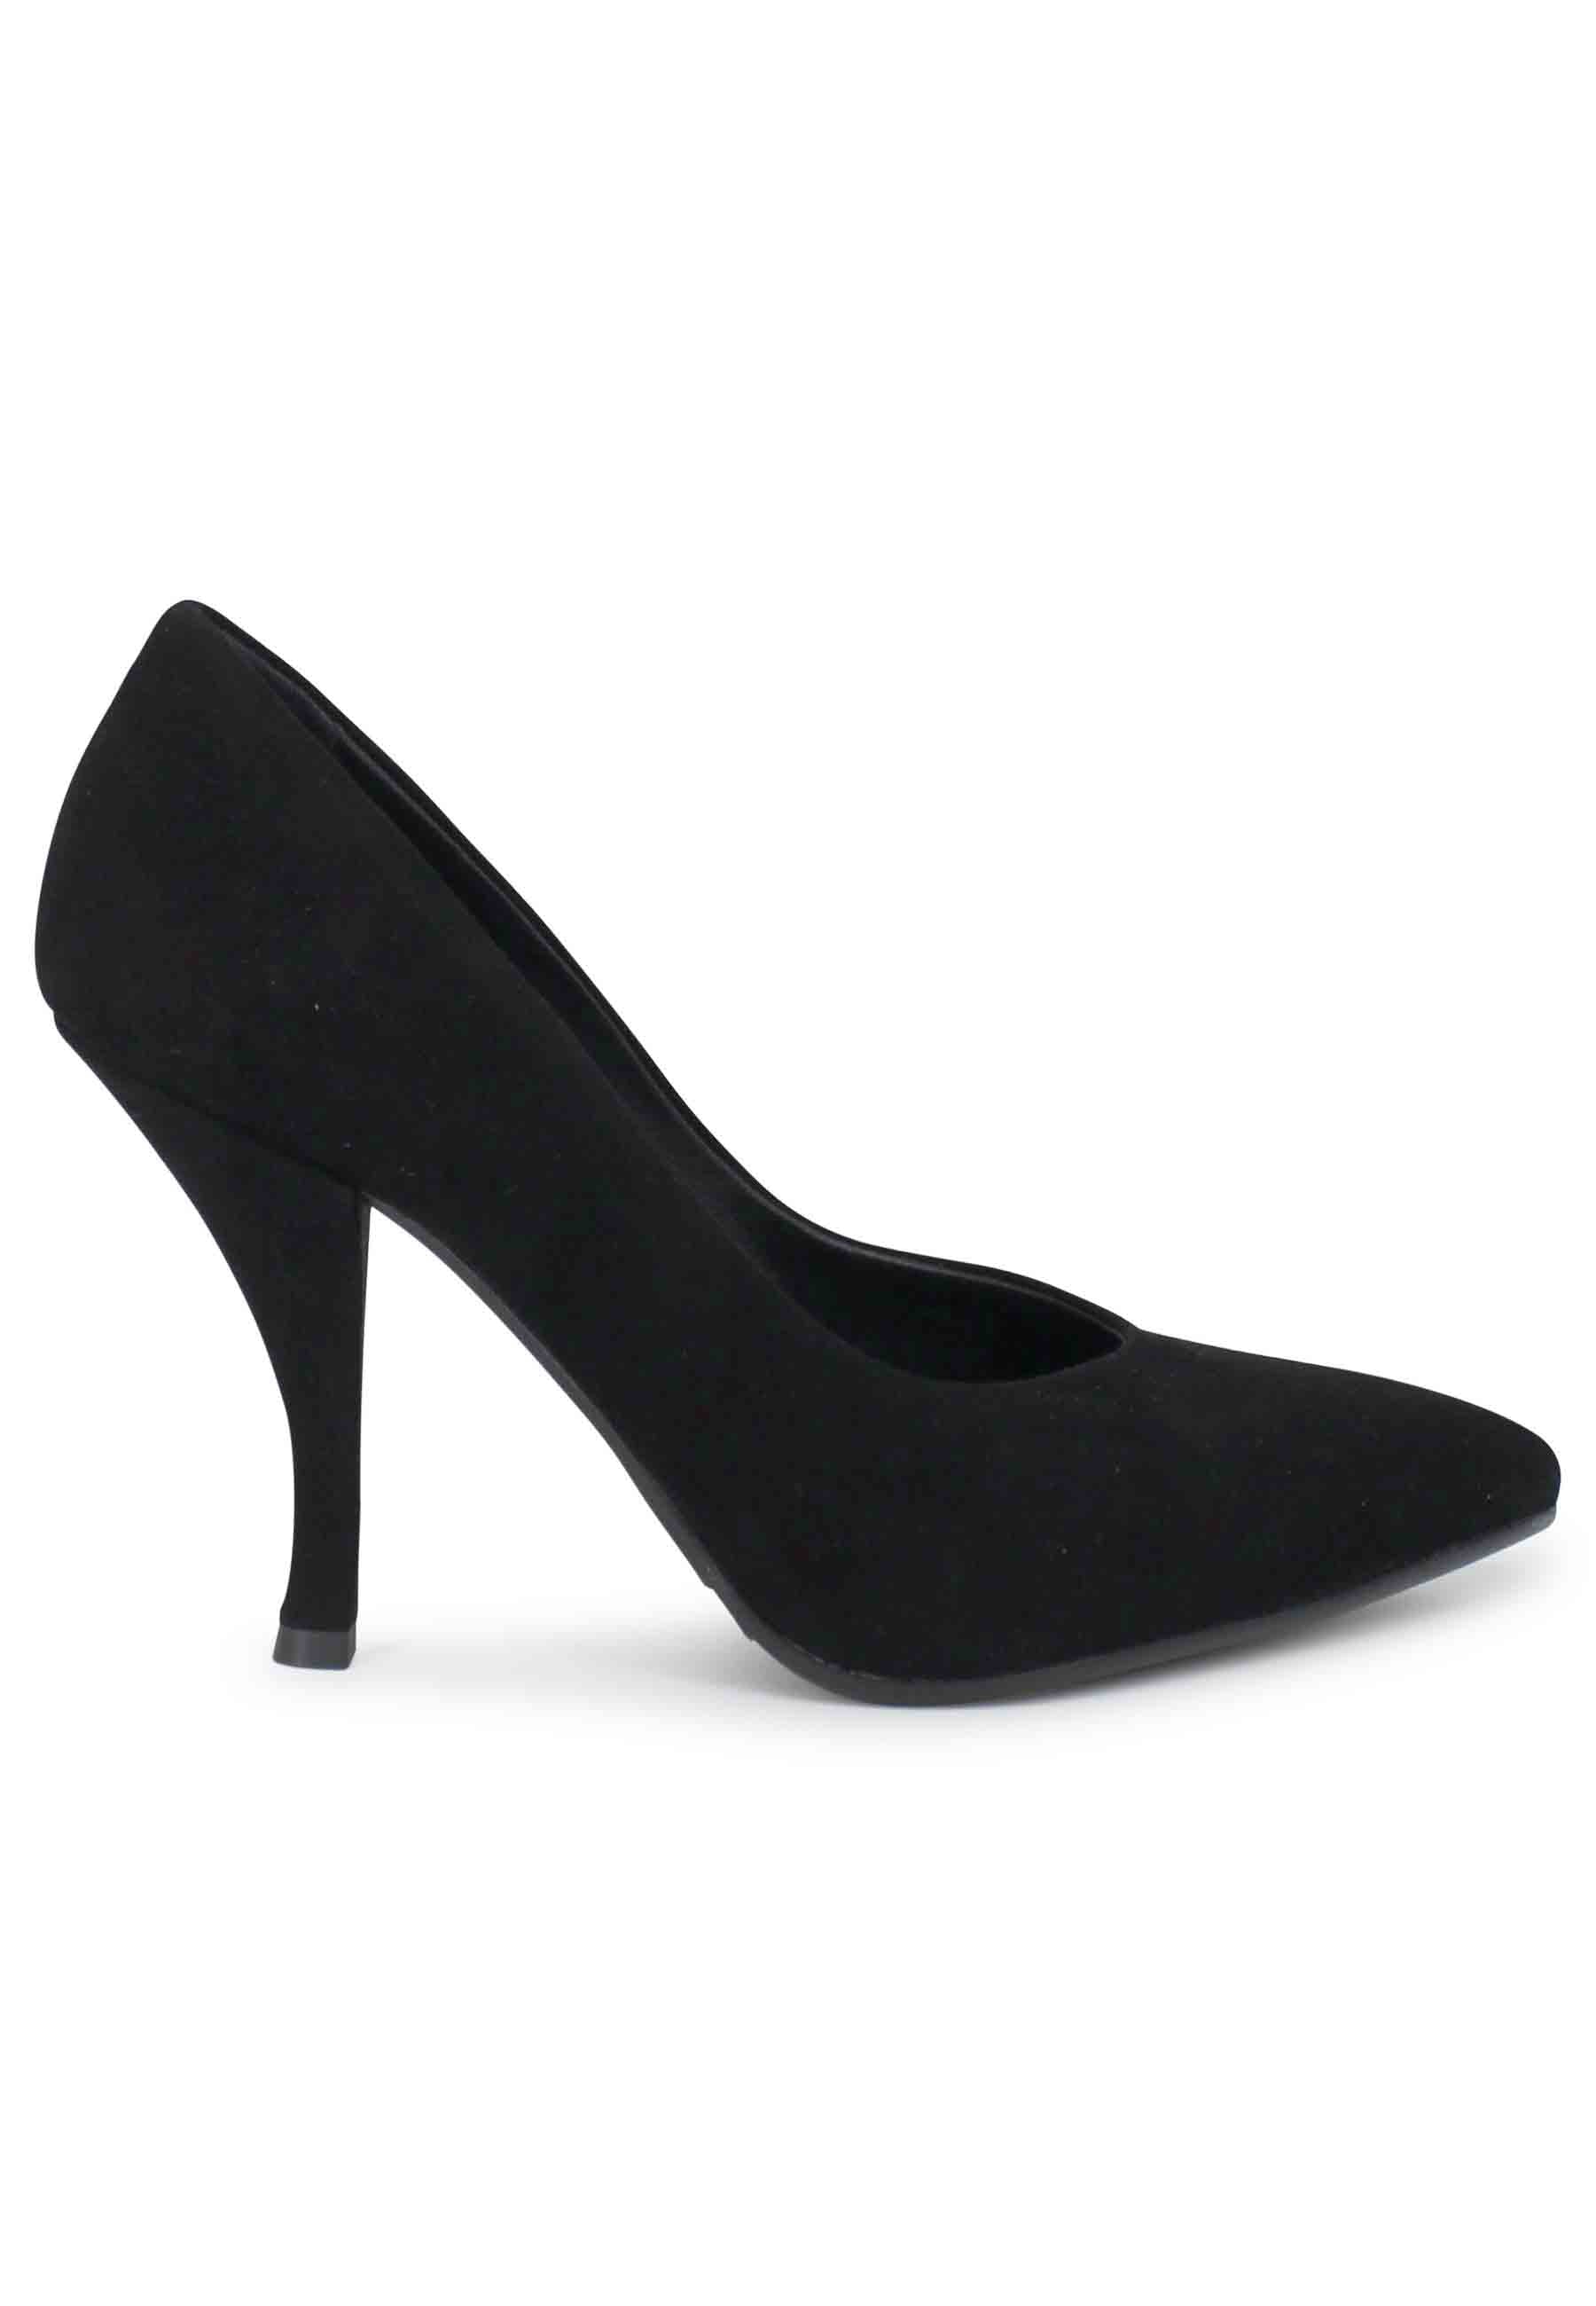 Women's high heel black suede pumps